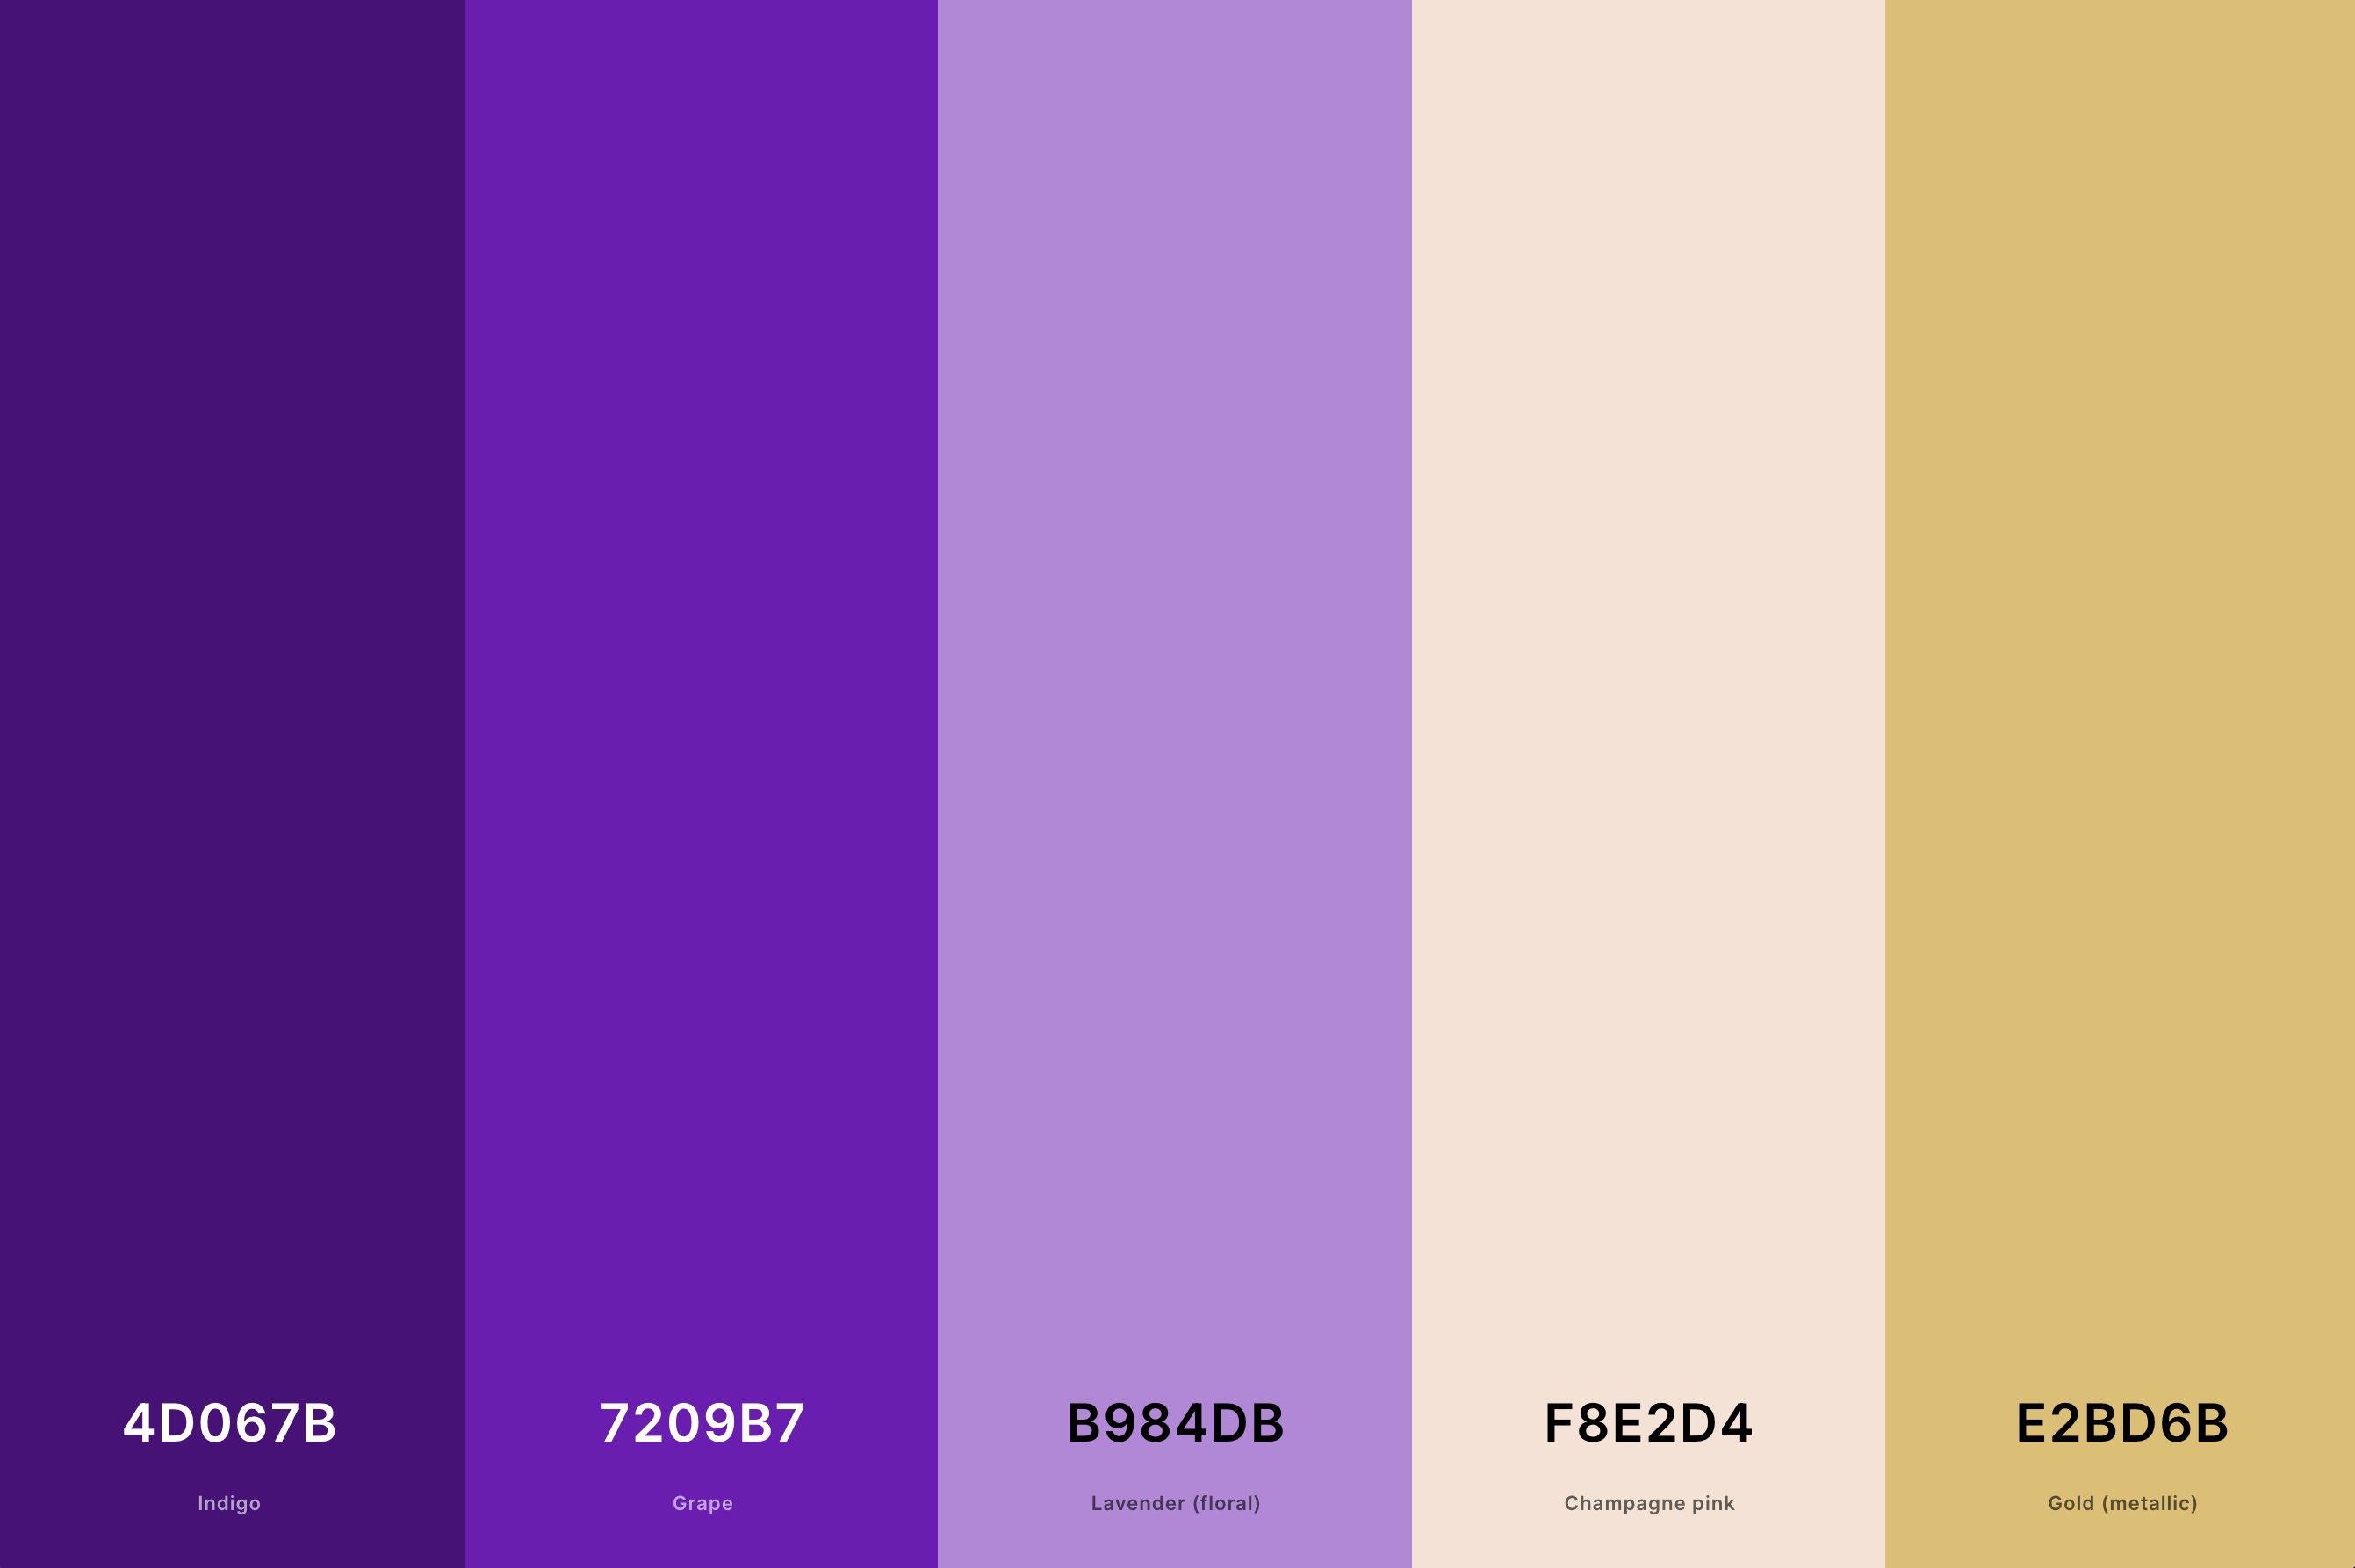 19. Royal Purple Color Palette Color Palette with Indigo (Hex #4D067B) + Grape (Hex #7209B7) + Lavender (Floral) (Hex #B984DB) + Champagne Pink (Hex #F8E2D4) + Gold (Metallic) (Hex #E2BD6B) Color Palette with Hex Codes